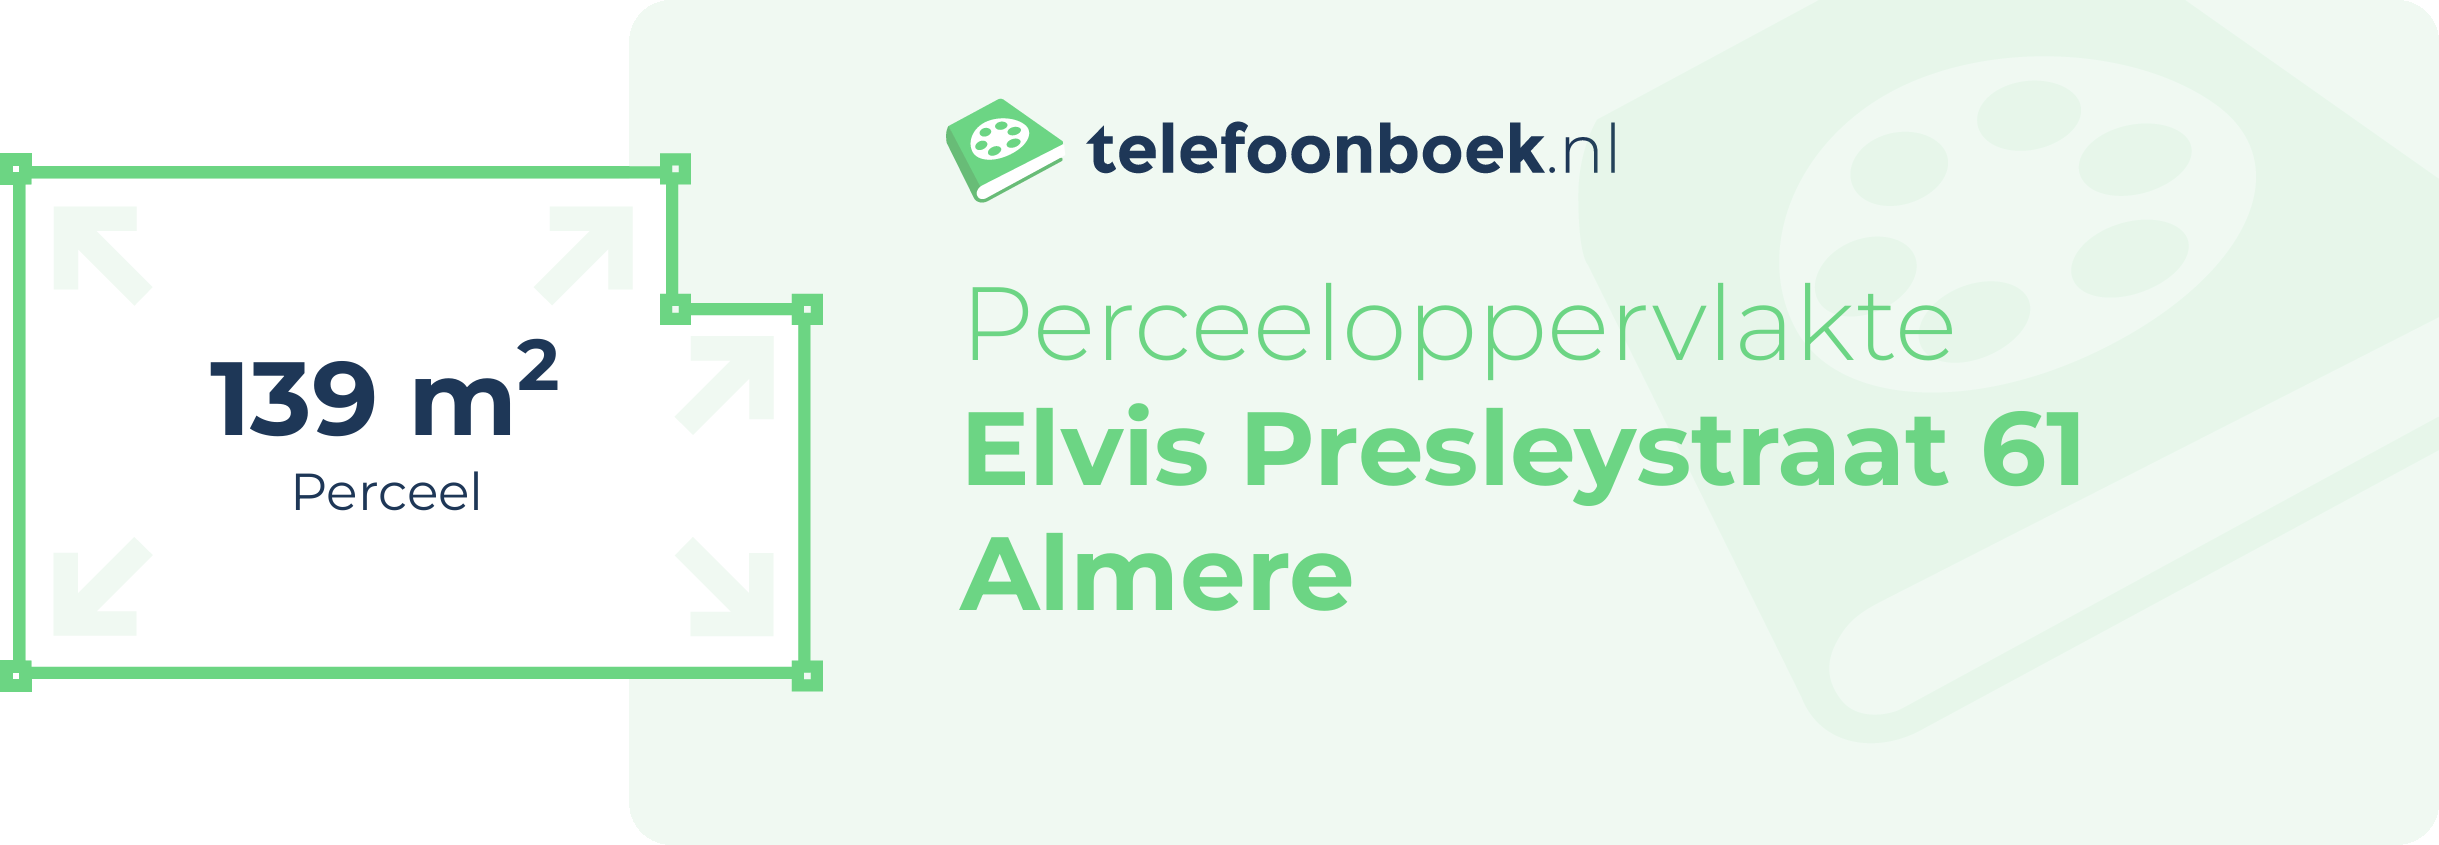 Perceeloppervlakte Elvis Presleystraat 61 Almere